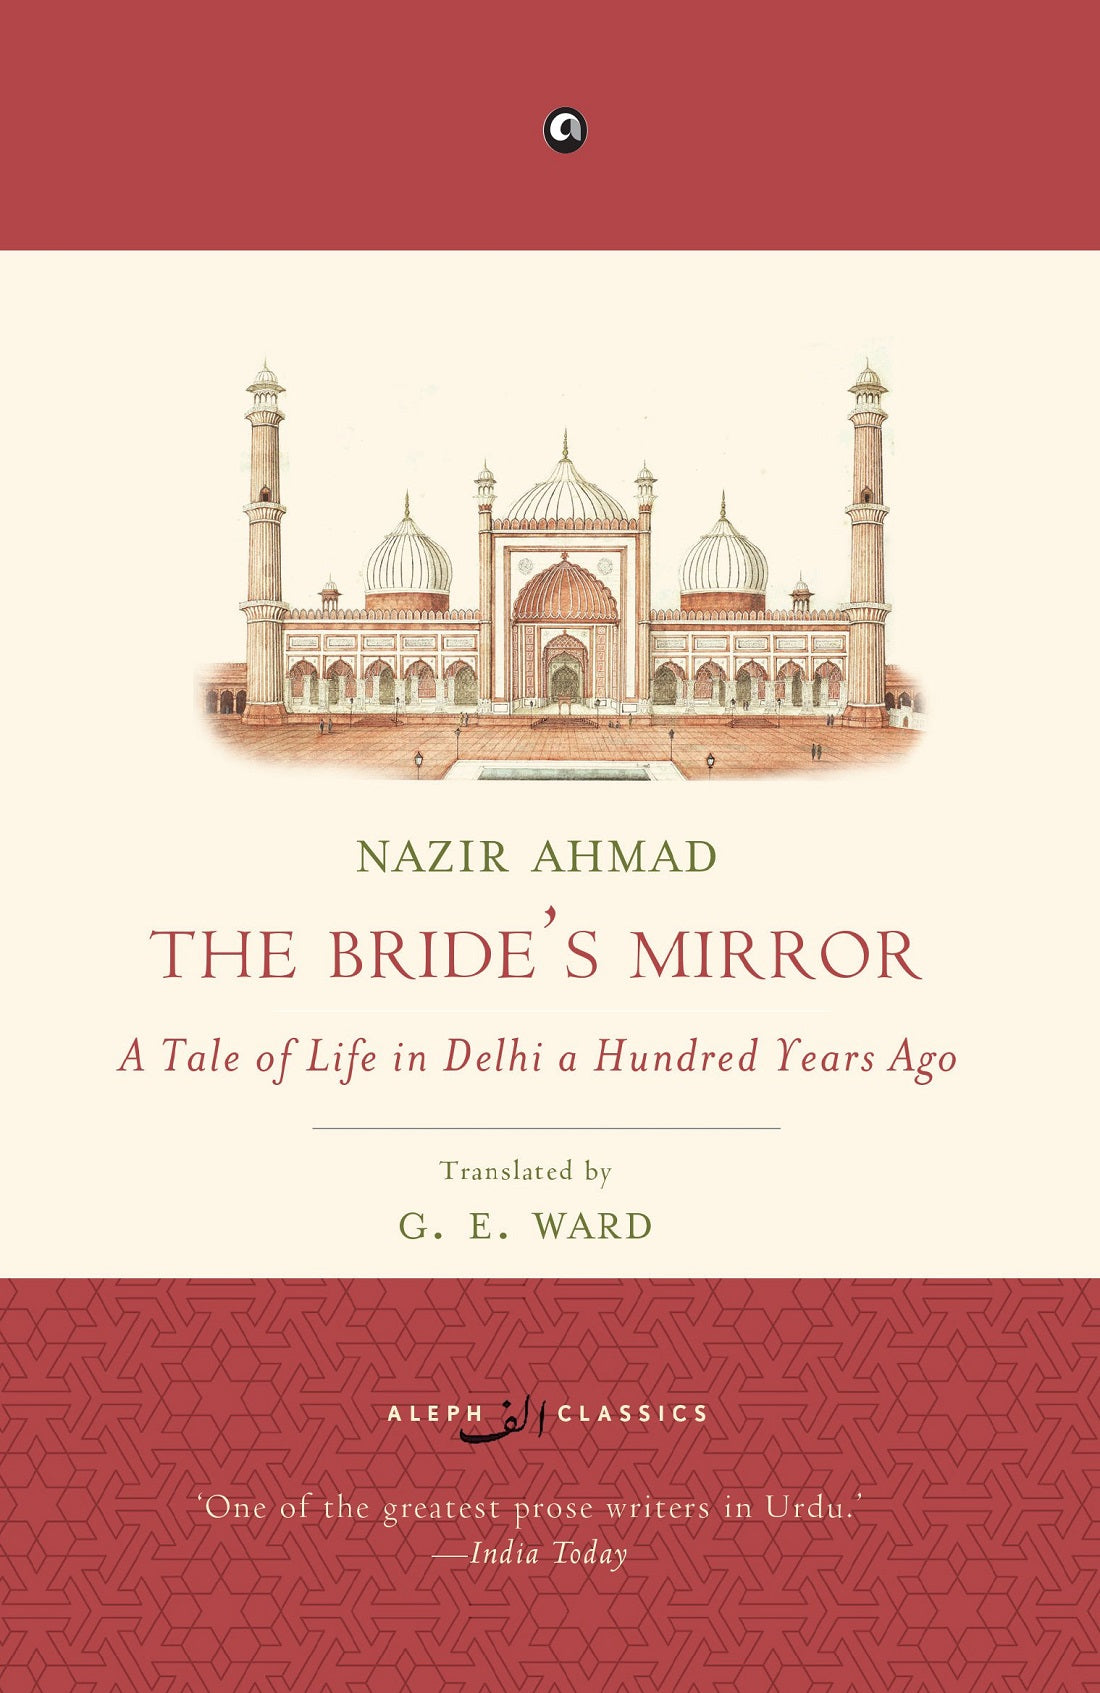 THE BRIDE'S MIRROR